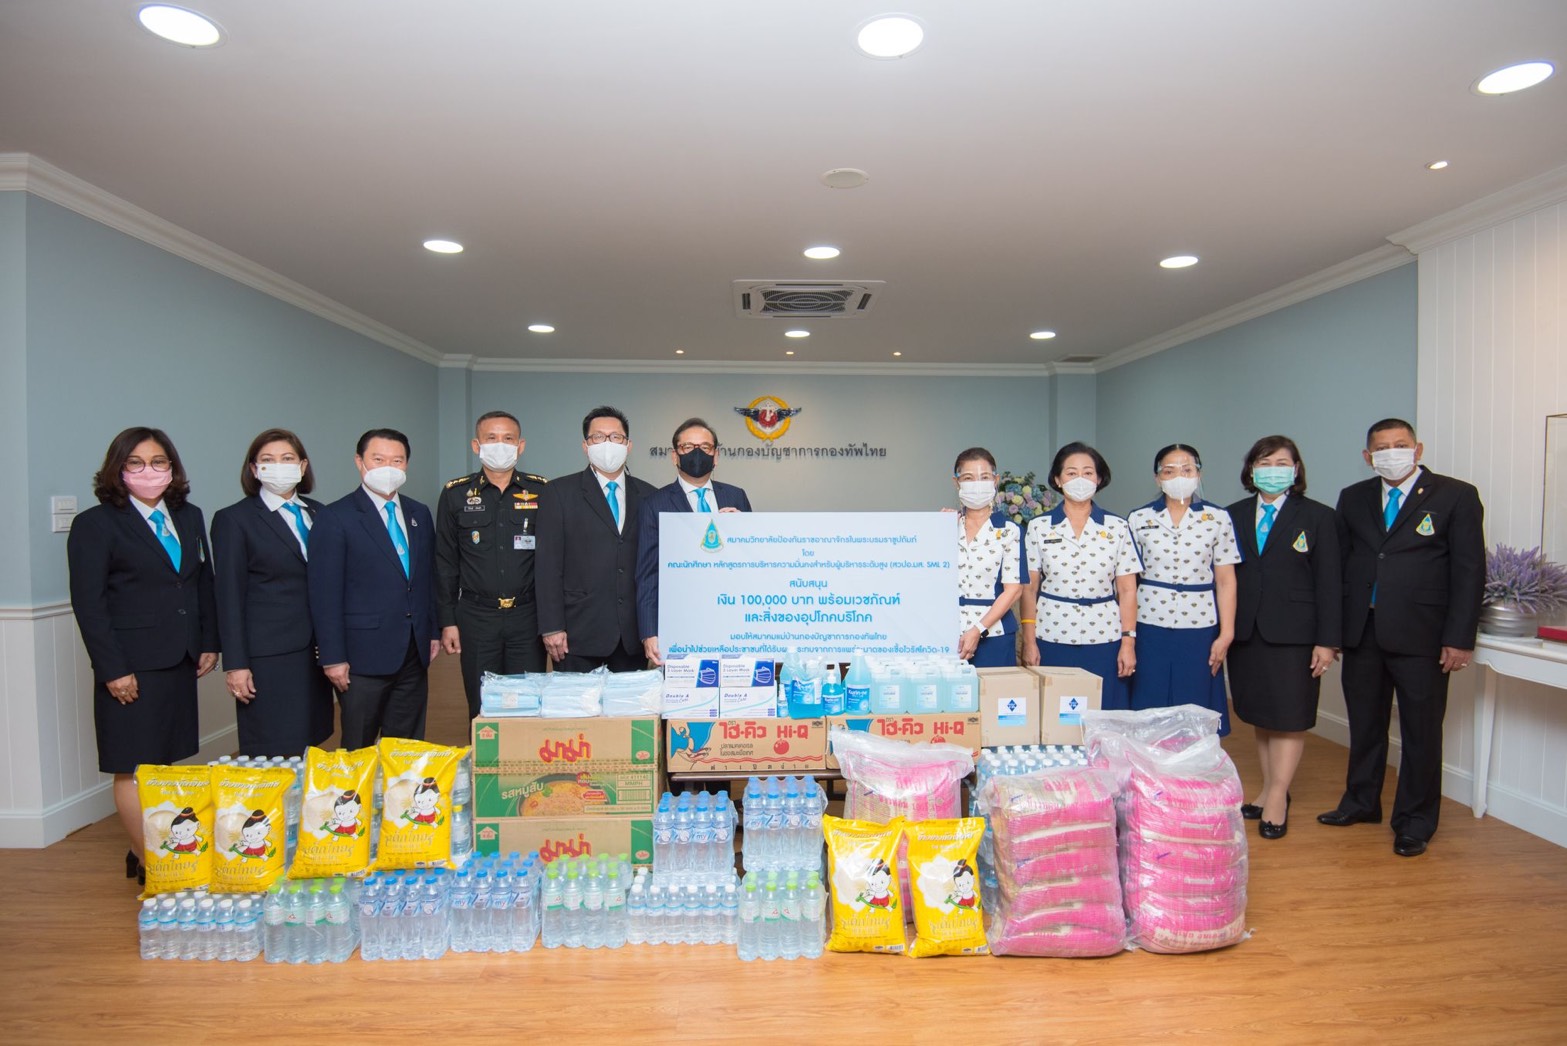 สวปอ.มส.SML 2 ร่วมสนับสนุนสมาคมแม่บ้านกองบัญชาการกองทัพไทย ส่งต่อความช่วยเหลือให้ผู้ได้รับผลกระทบจากโควิด-19